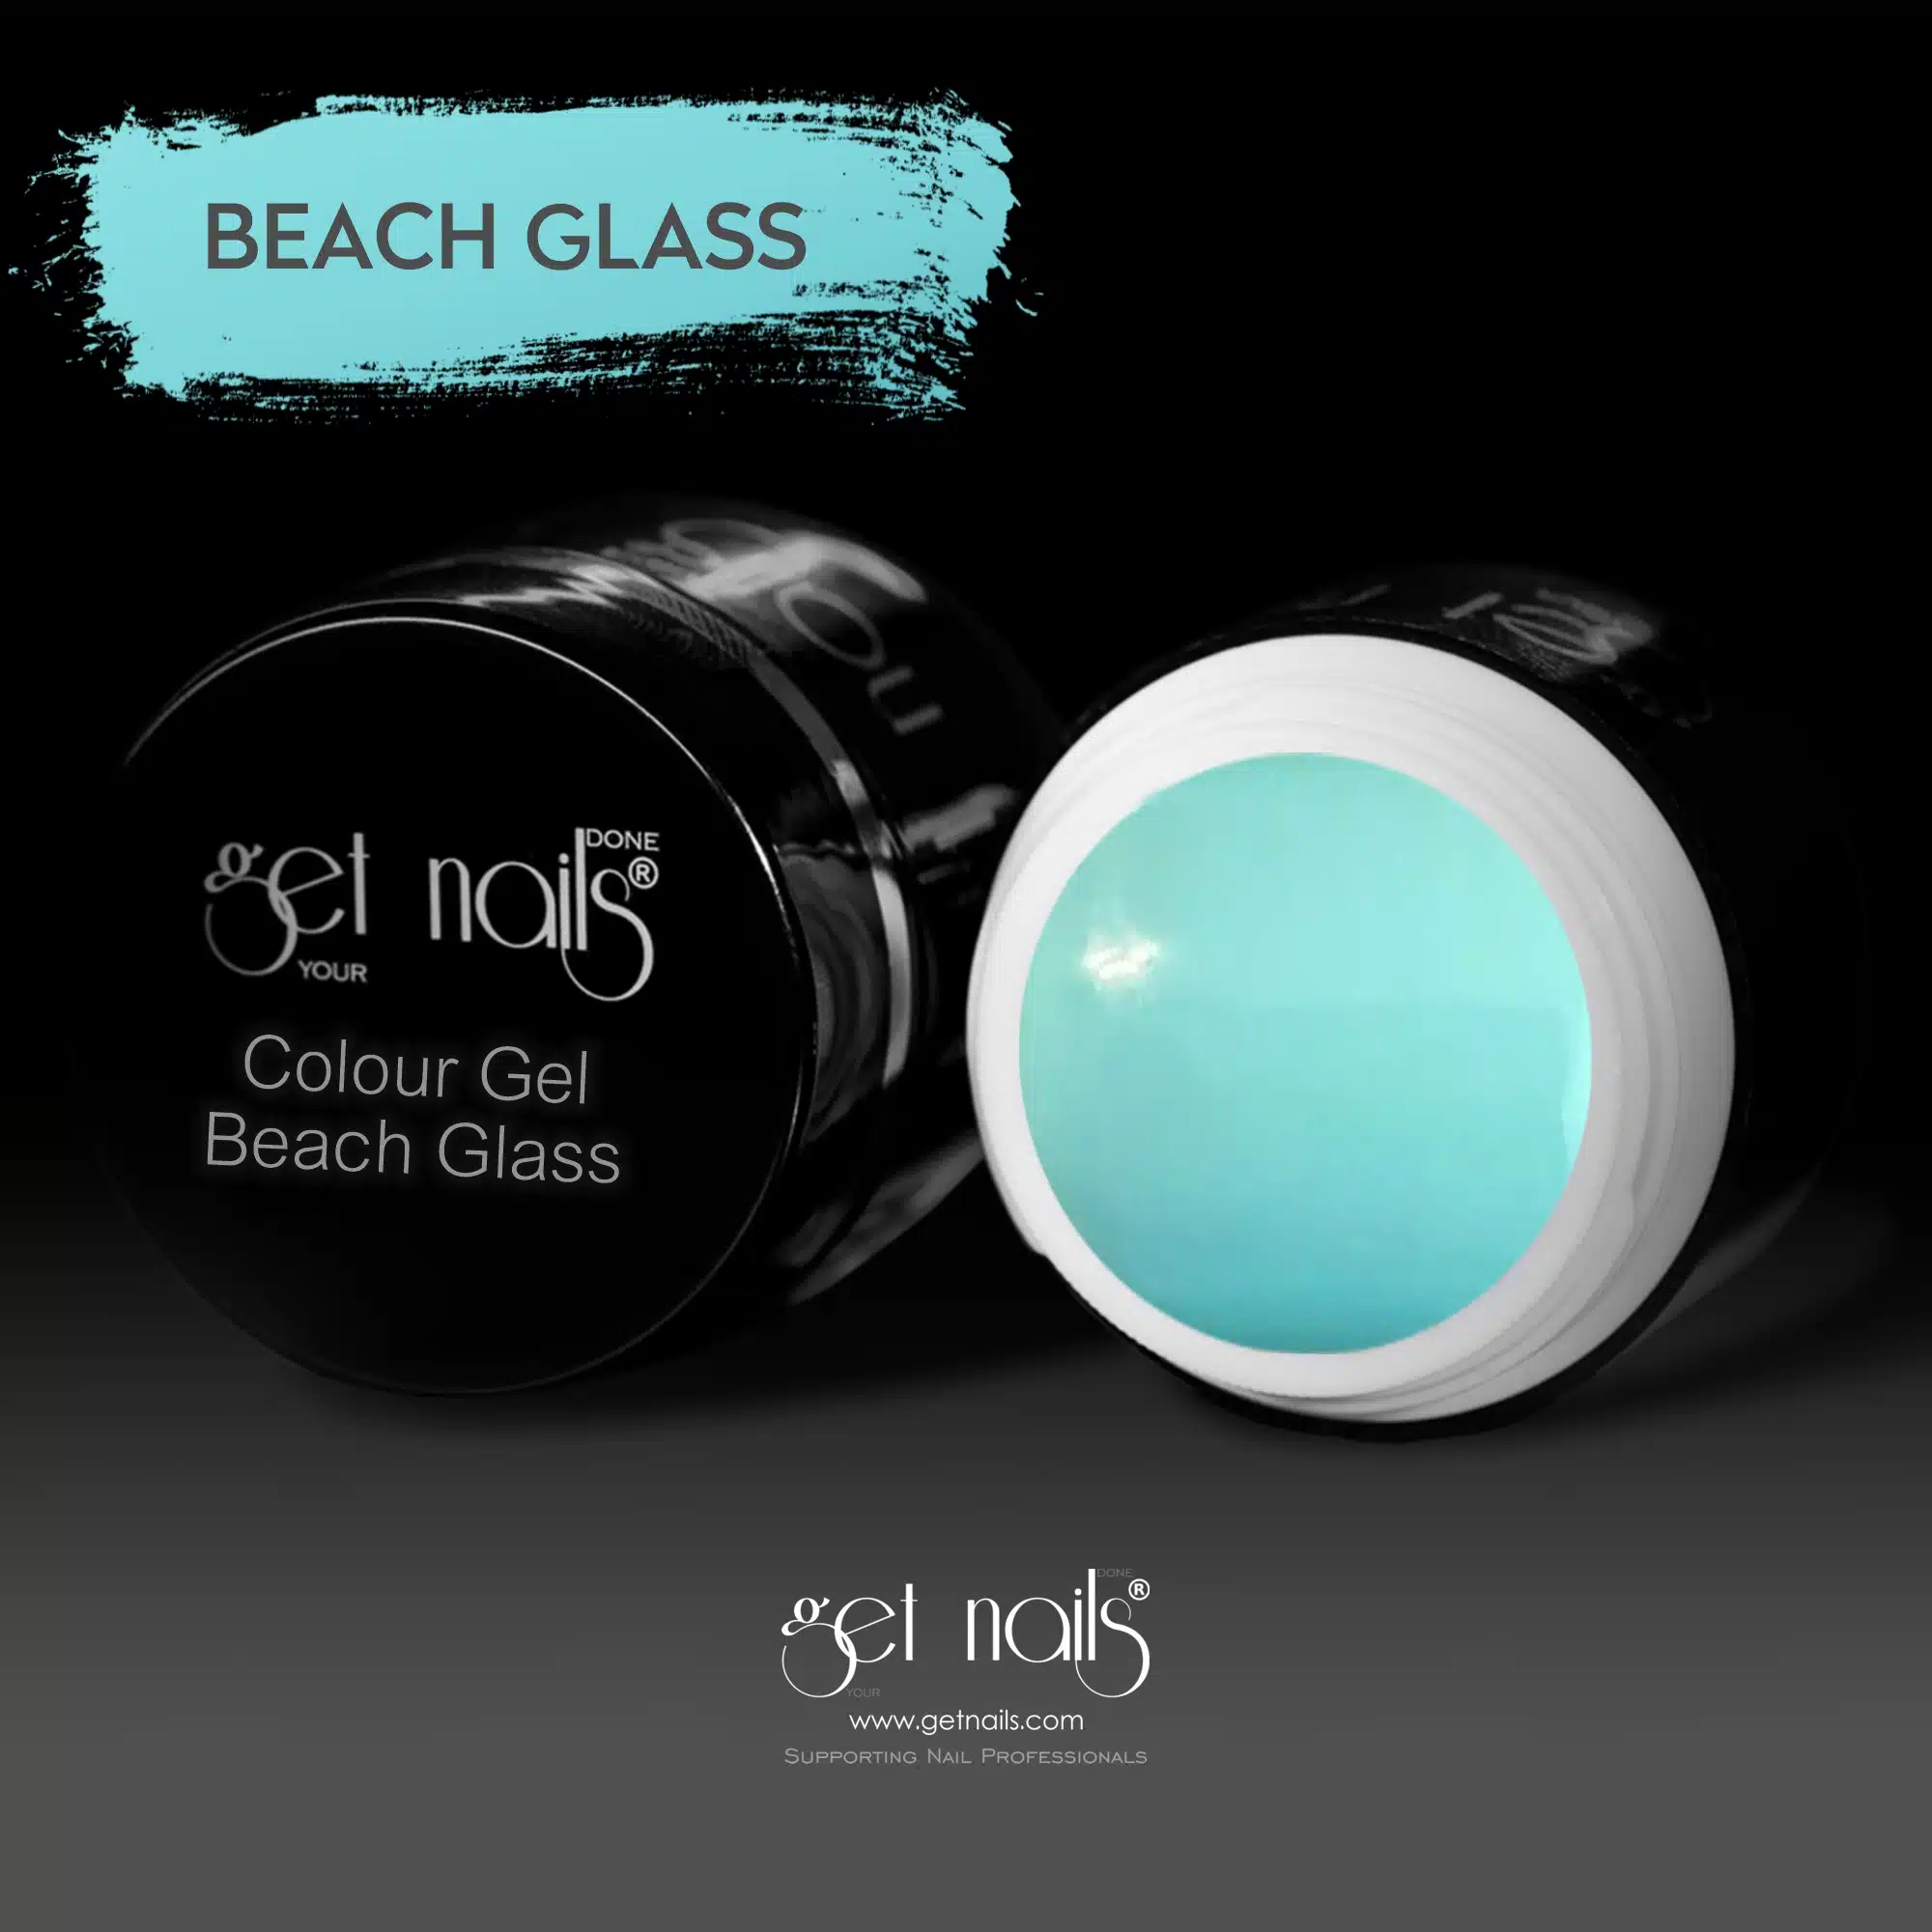 Get Nails Austria - Цветной гель Beach Glass 5g